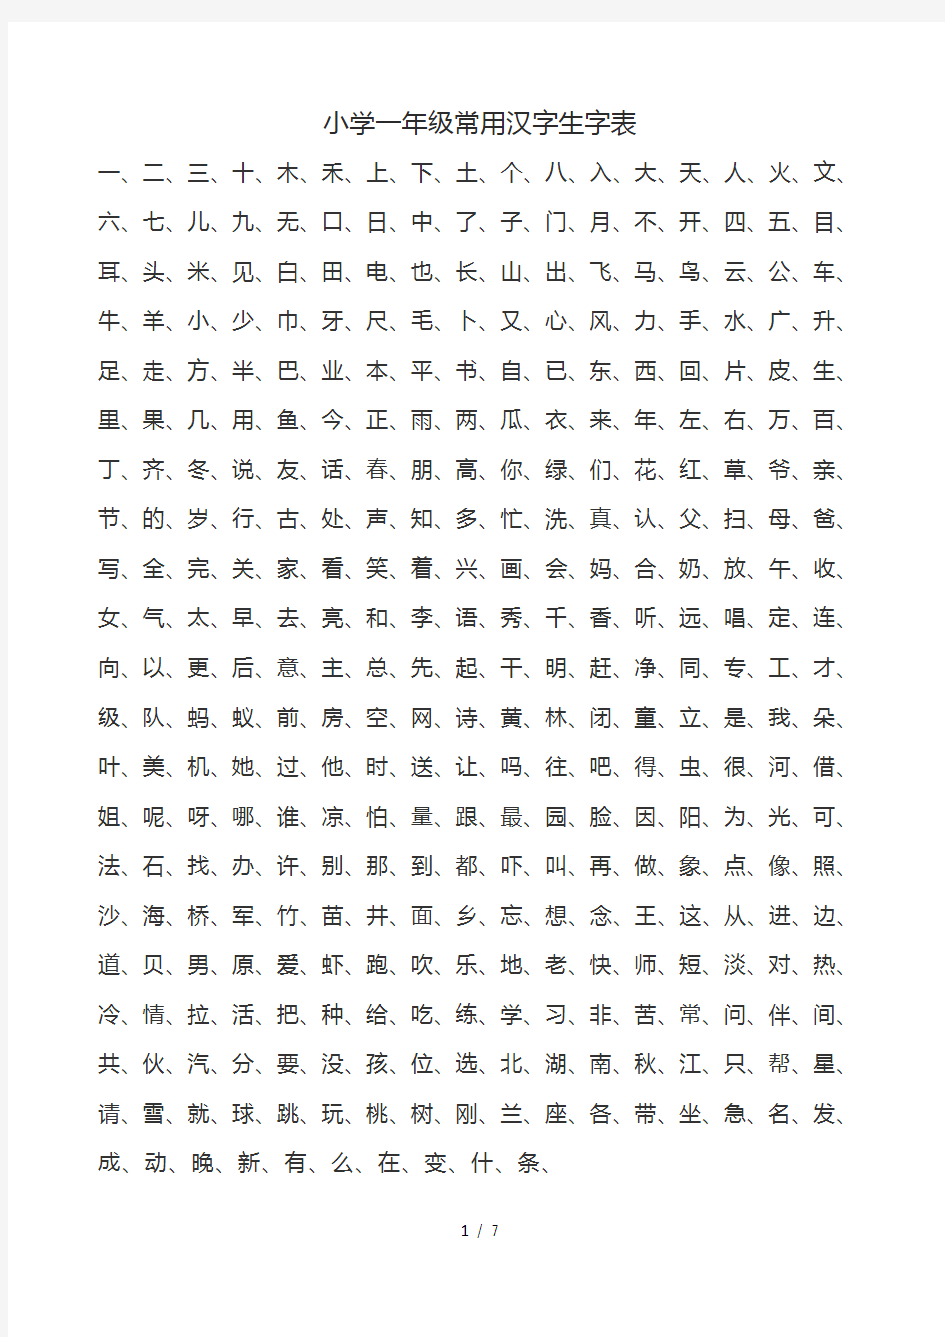 小学1-6年级常用汉字生字表-A4打印版